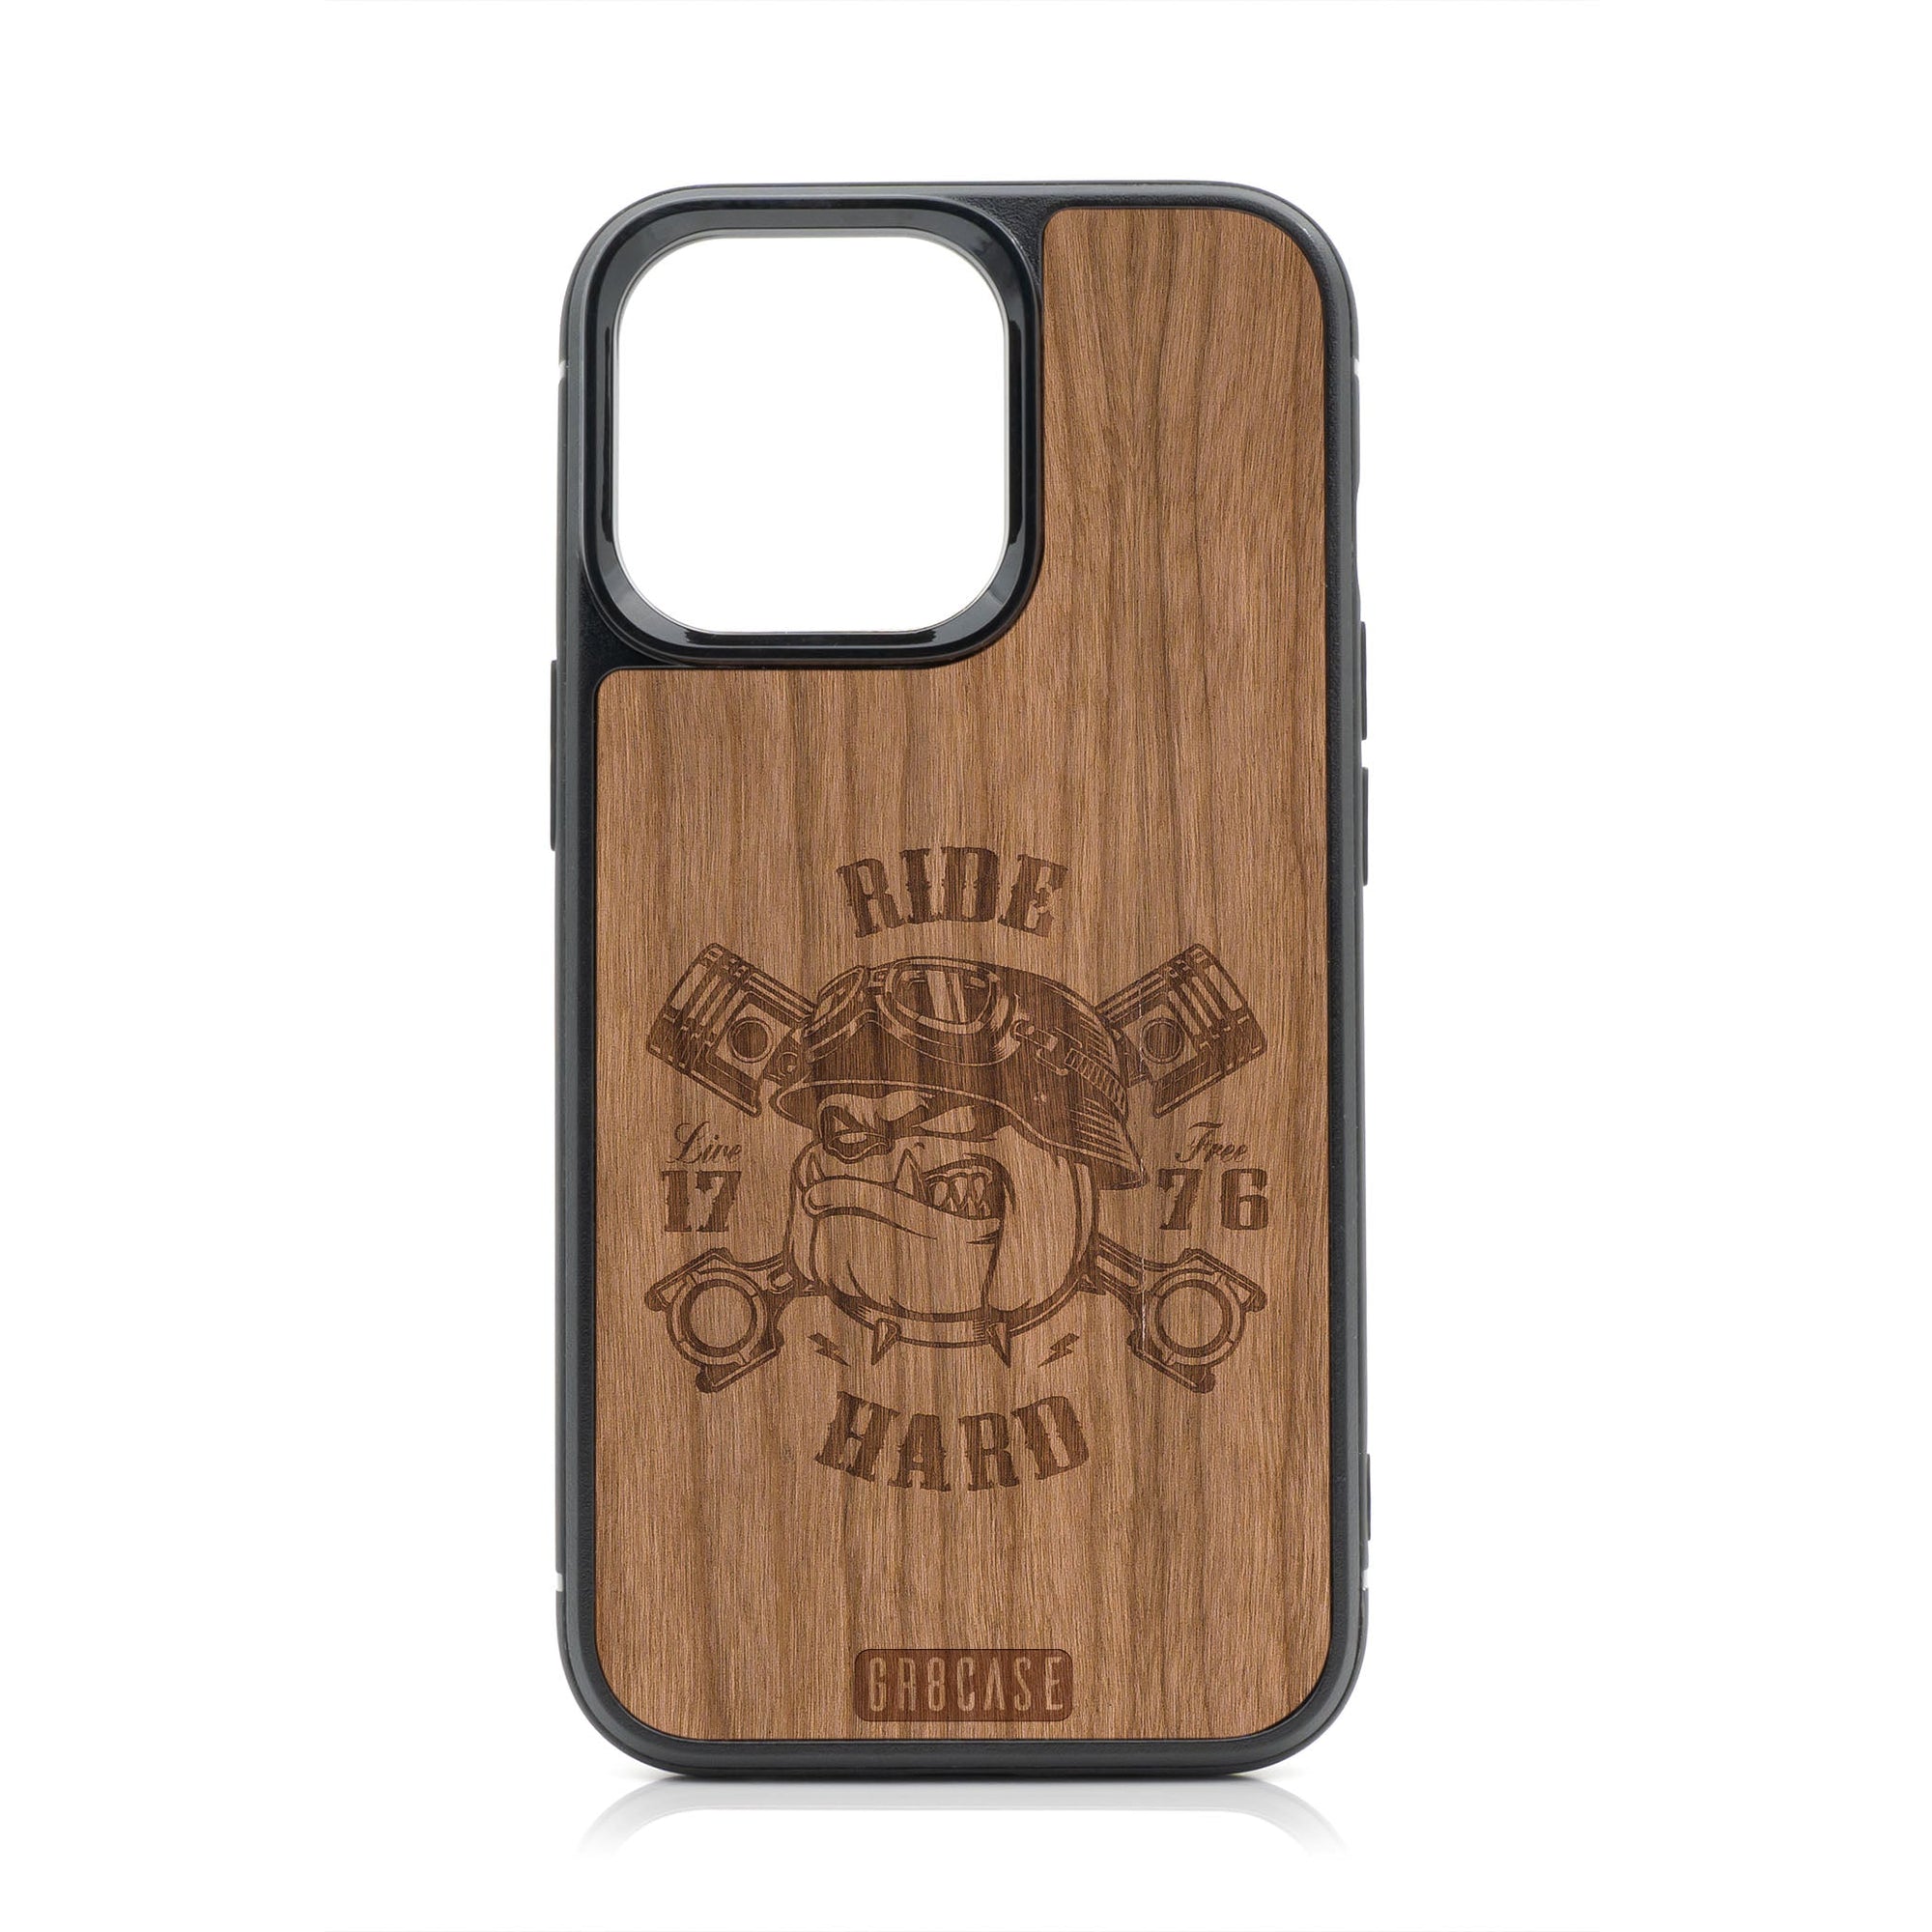 Ride Hard Live Free (Biker Dog) Design Wood Case For iPhone 14 Pro